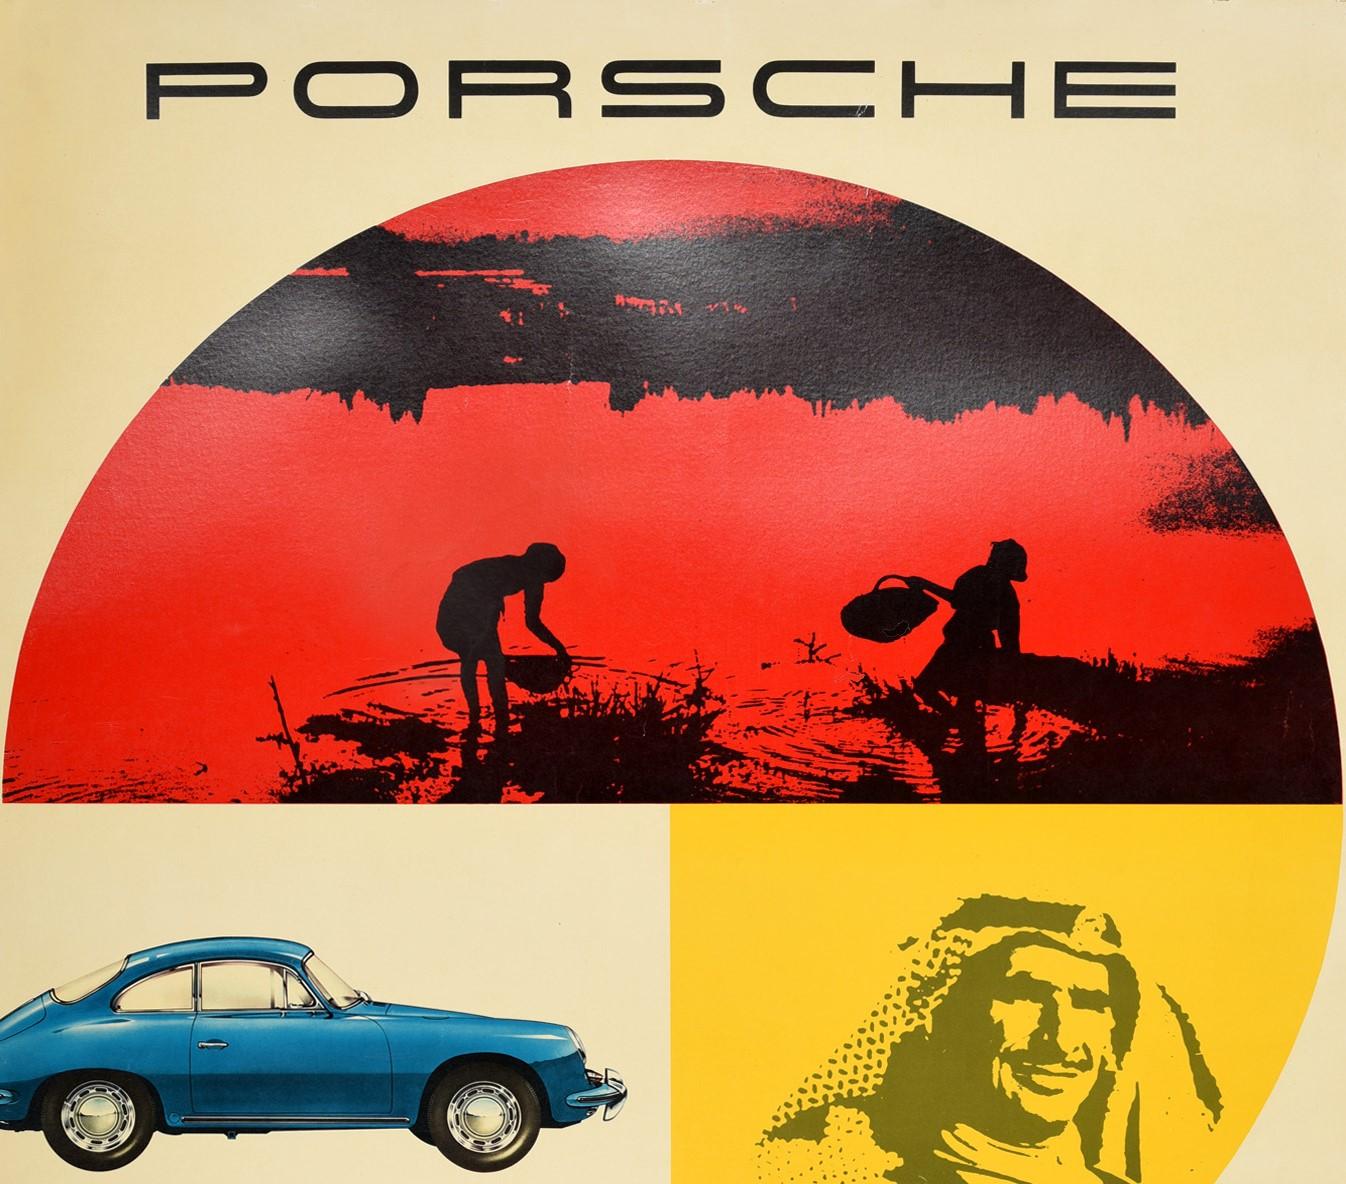 Original Oldtimer-Werbeplakat für Porsche Service in aller Welt mit einem dynamischen Design aus Fotografien, die zwei Personen mit Körben auf einem See in Rot und Schwarz, einen blauen Porsche, einen arabischen Mann vor gelbem Hintergrund und den